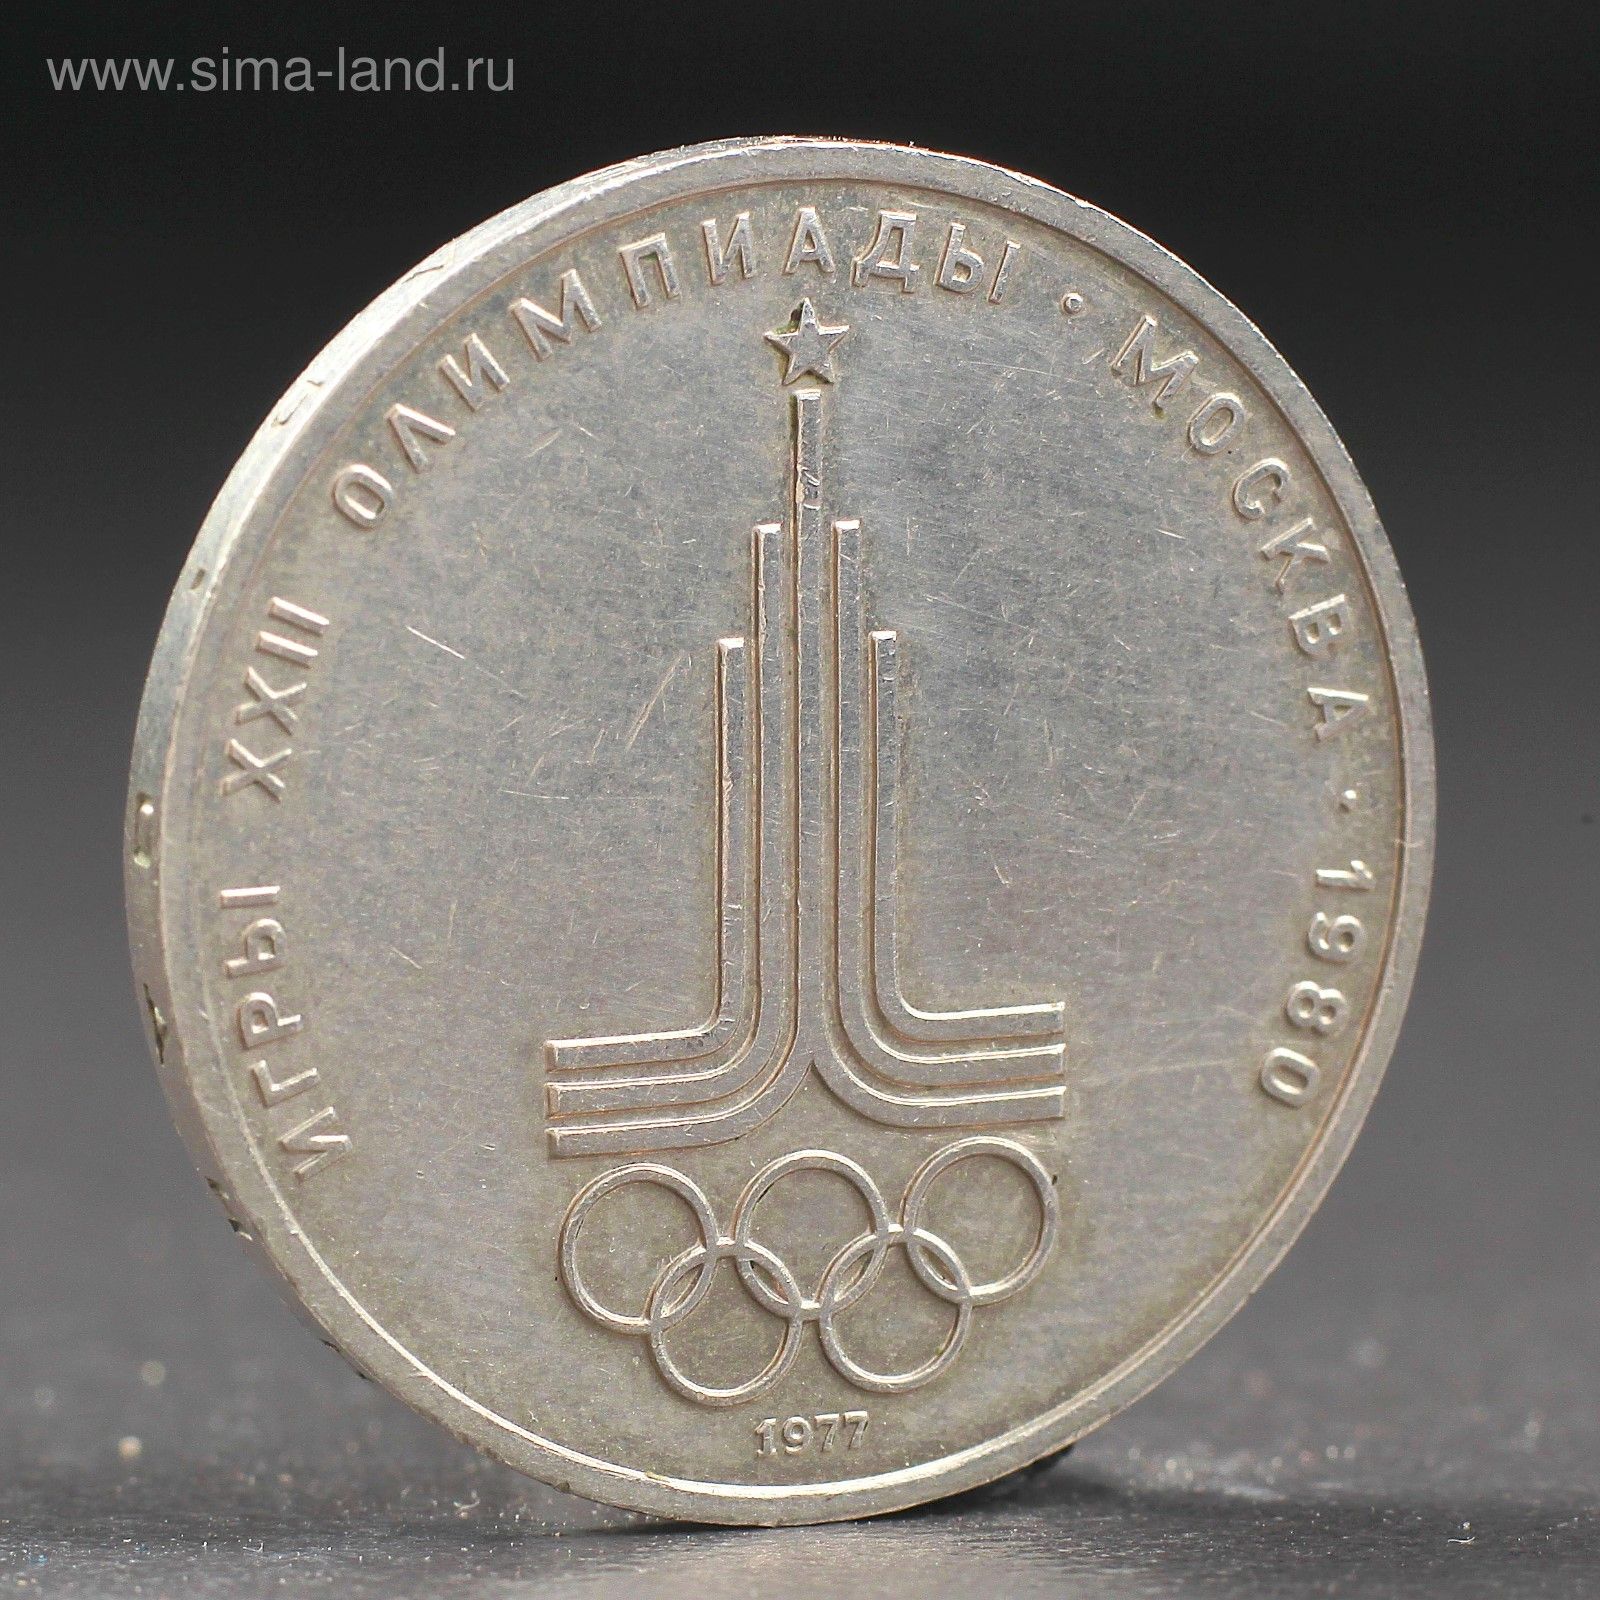 1 рубль 80 года. Монета СССР 1 рубль 1980 года Олимпийский. Монета 1 рубль 1977 года. Олимпийский рубль 1977.